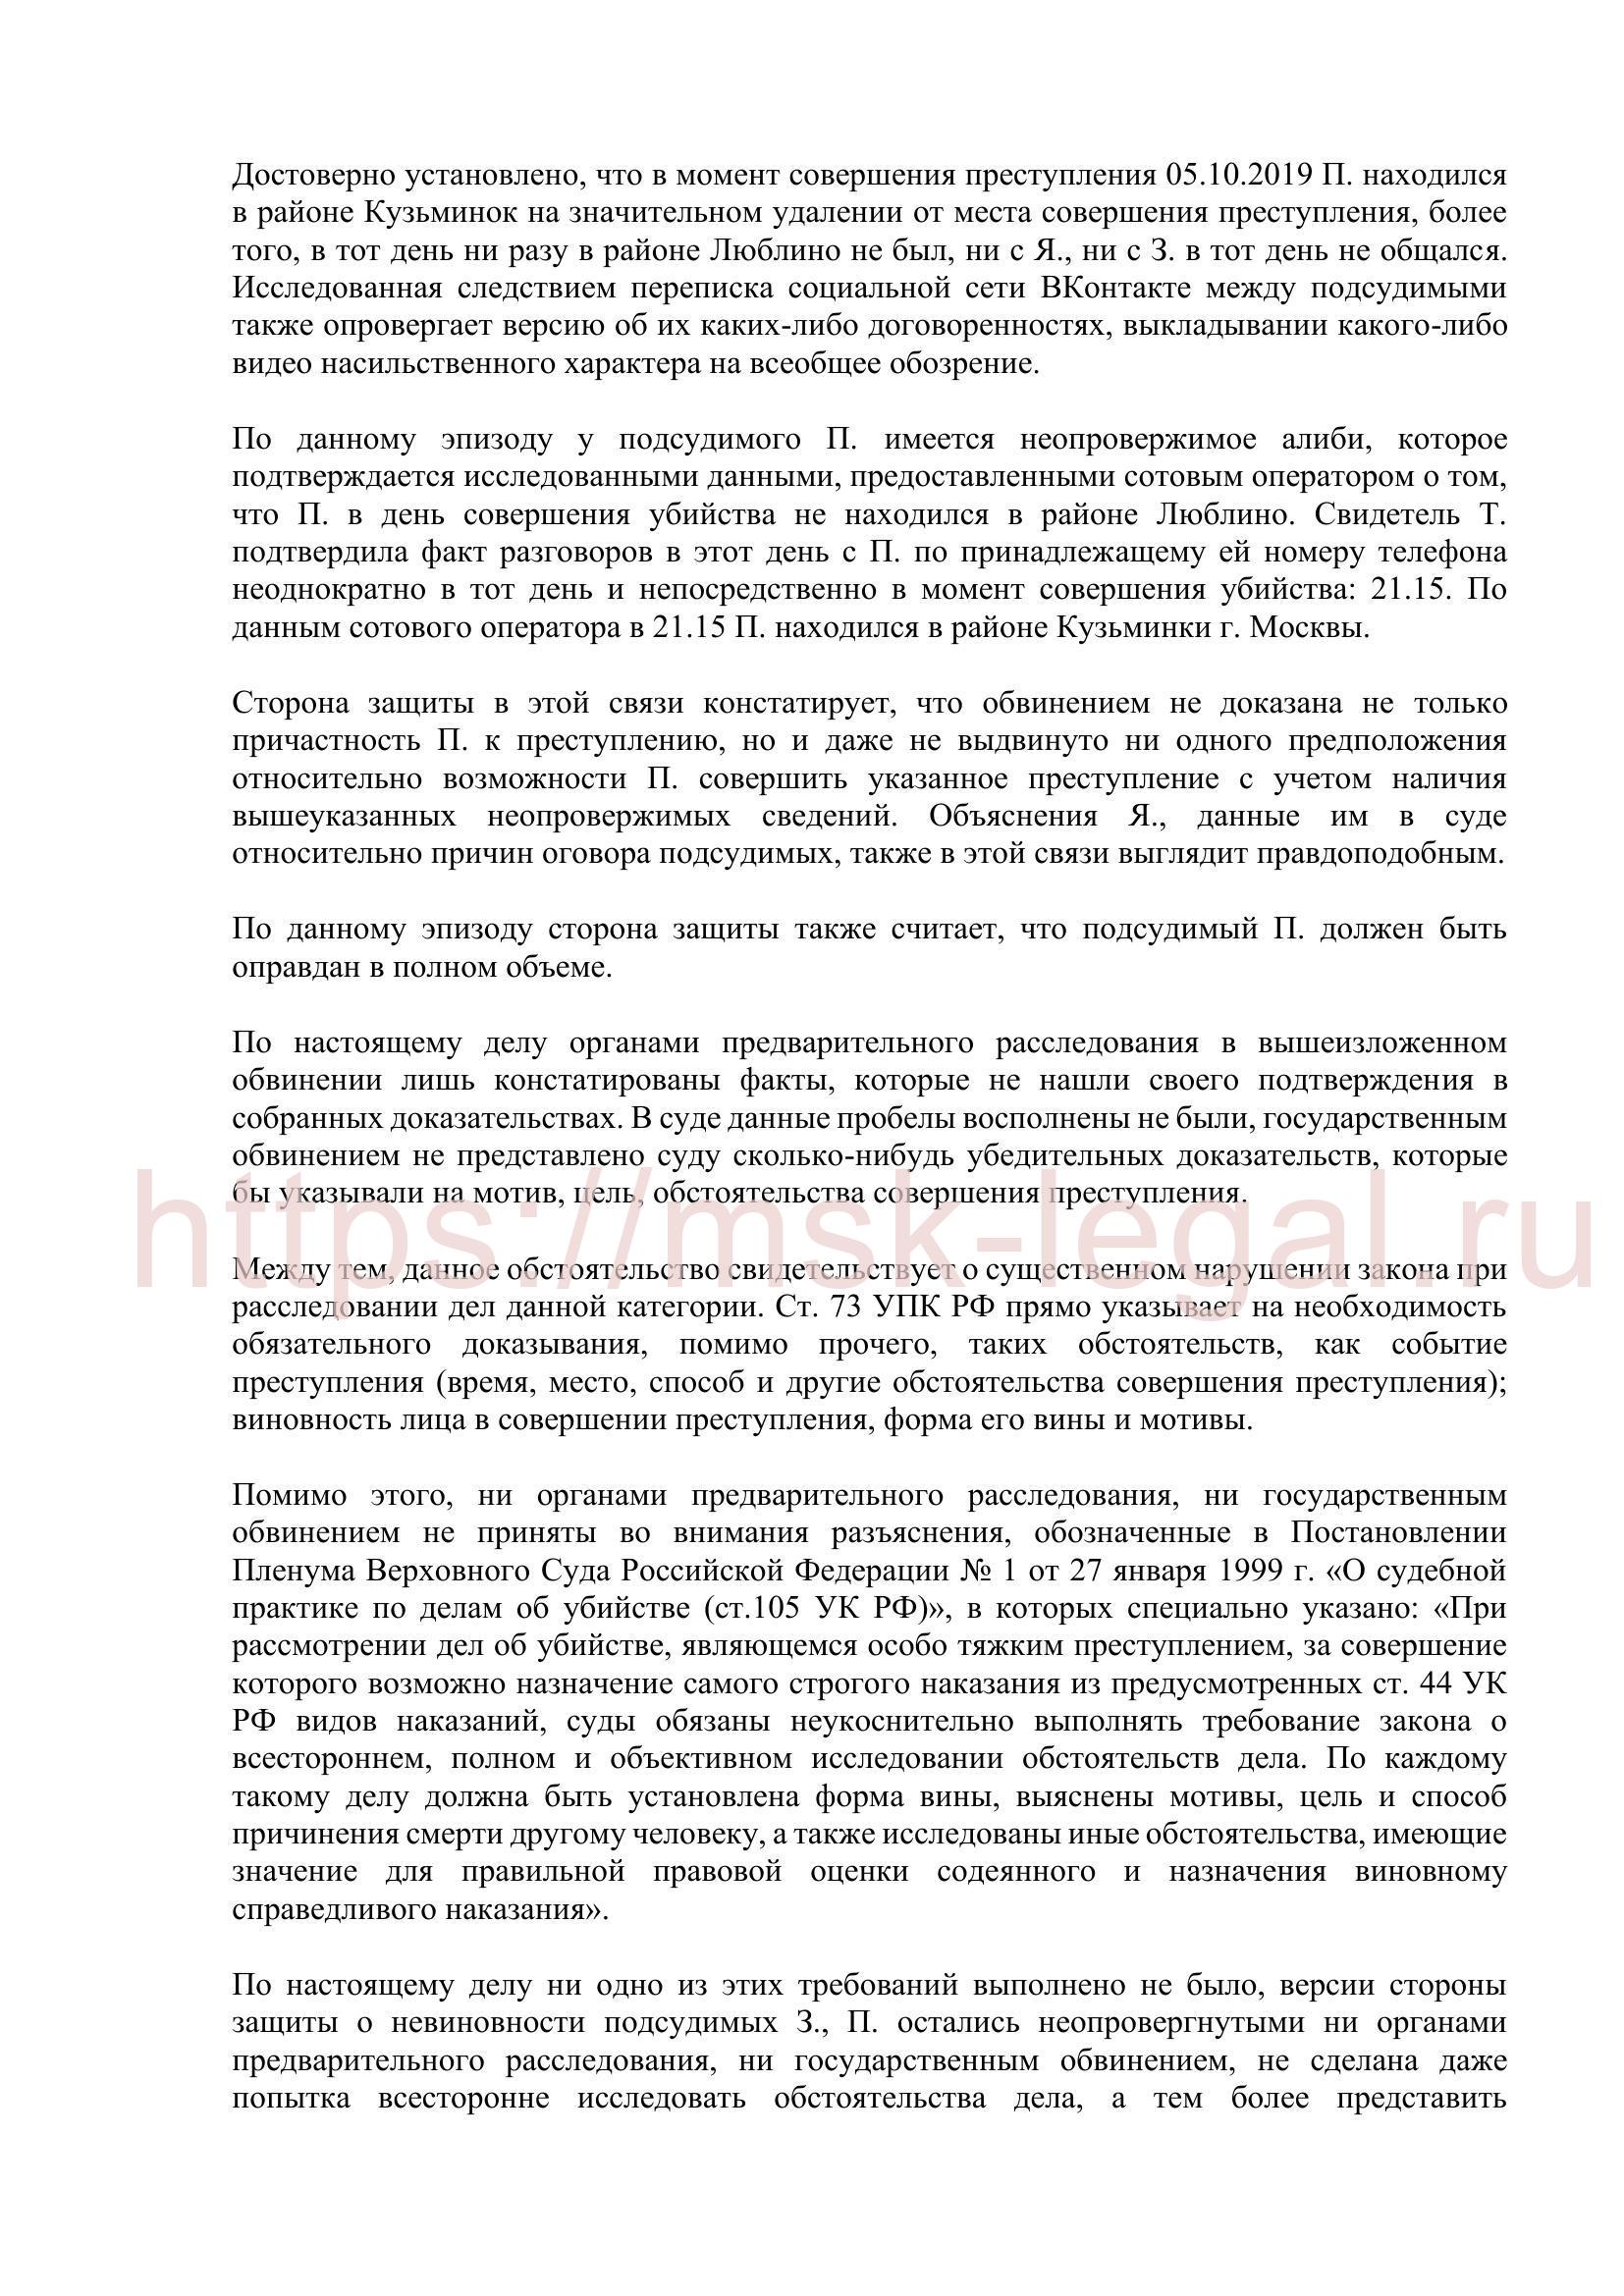 Тезисы к выступлению адвоката Хоруженко А. С. по уголовному делу об убийстве